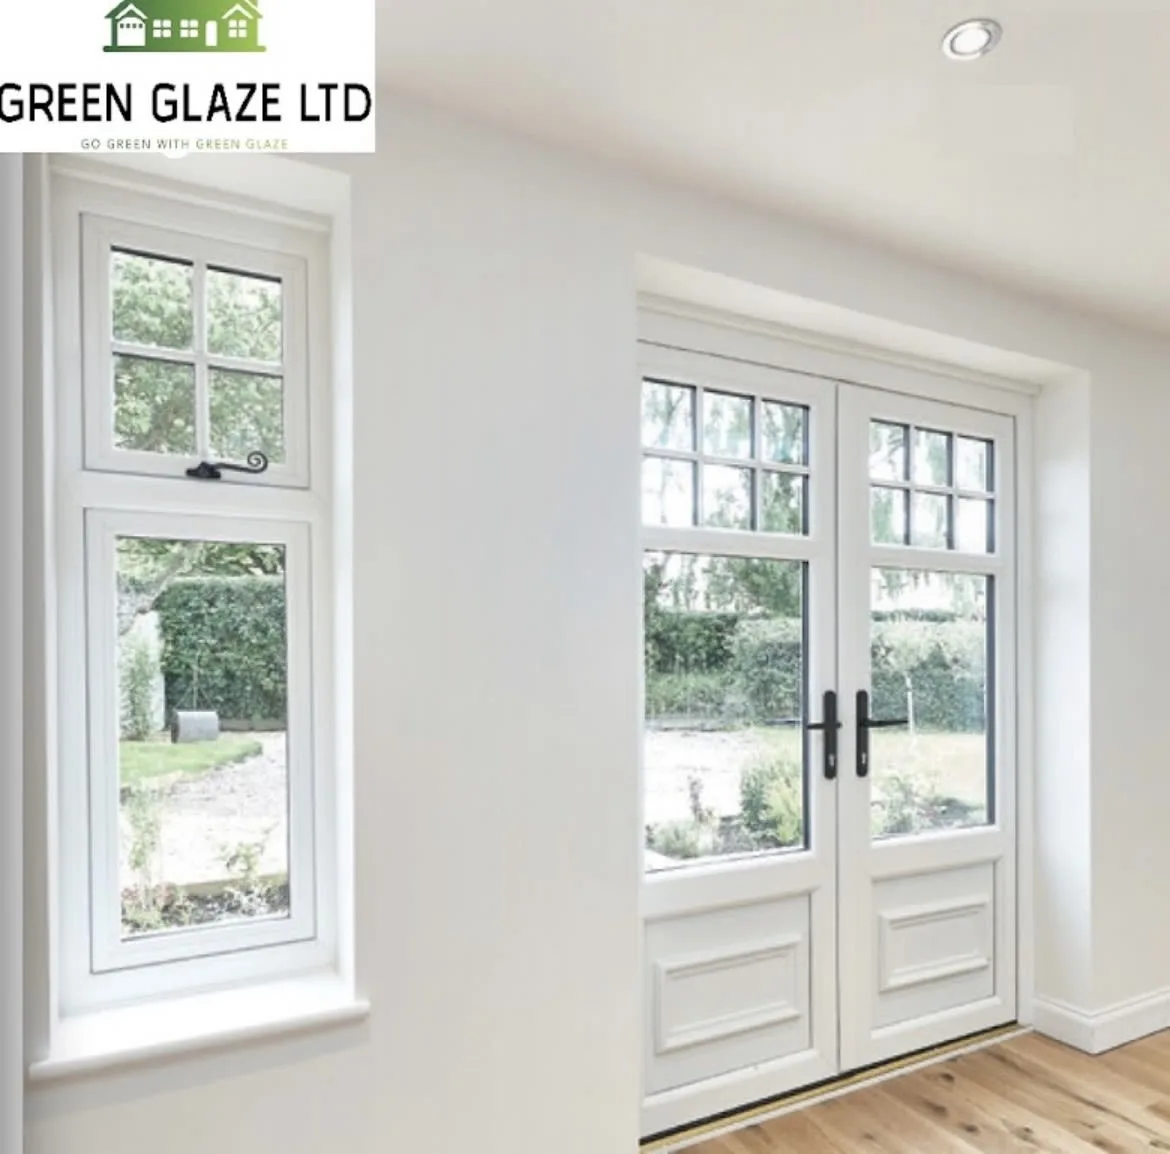 Green Glaze Ltd Bristol 01172 870071